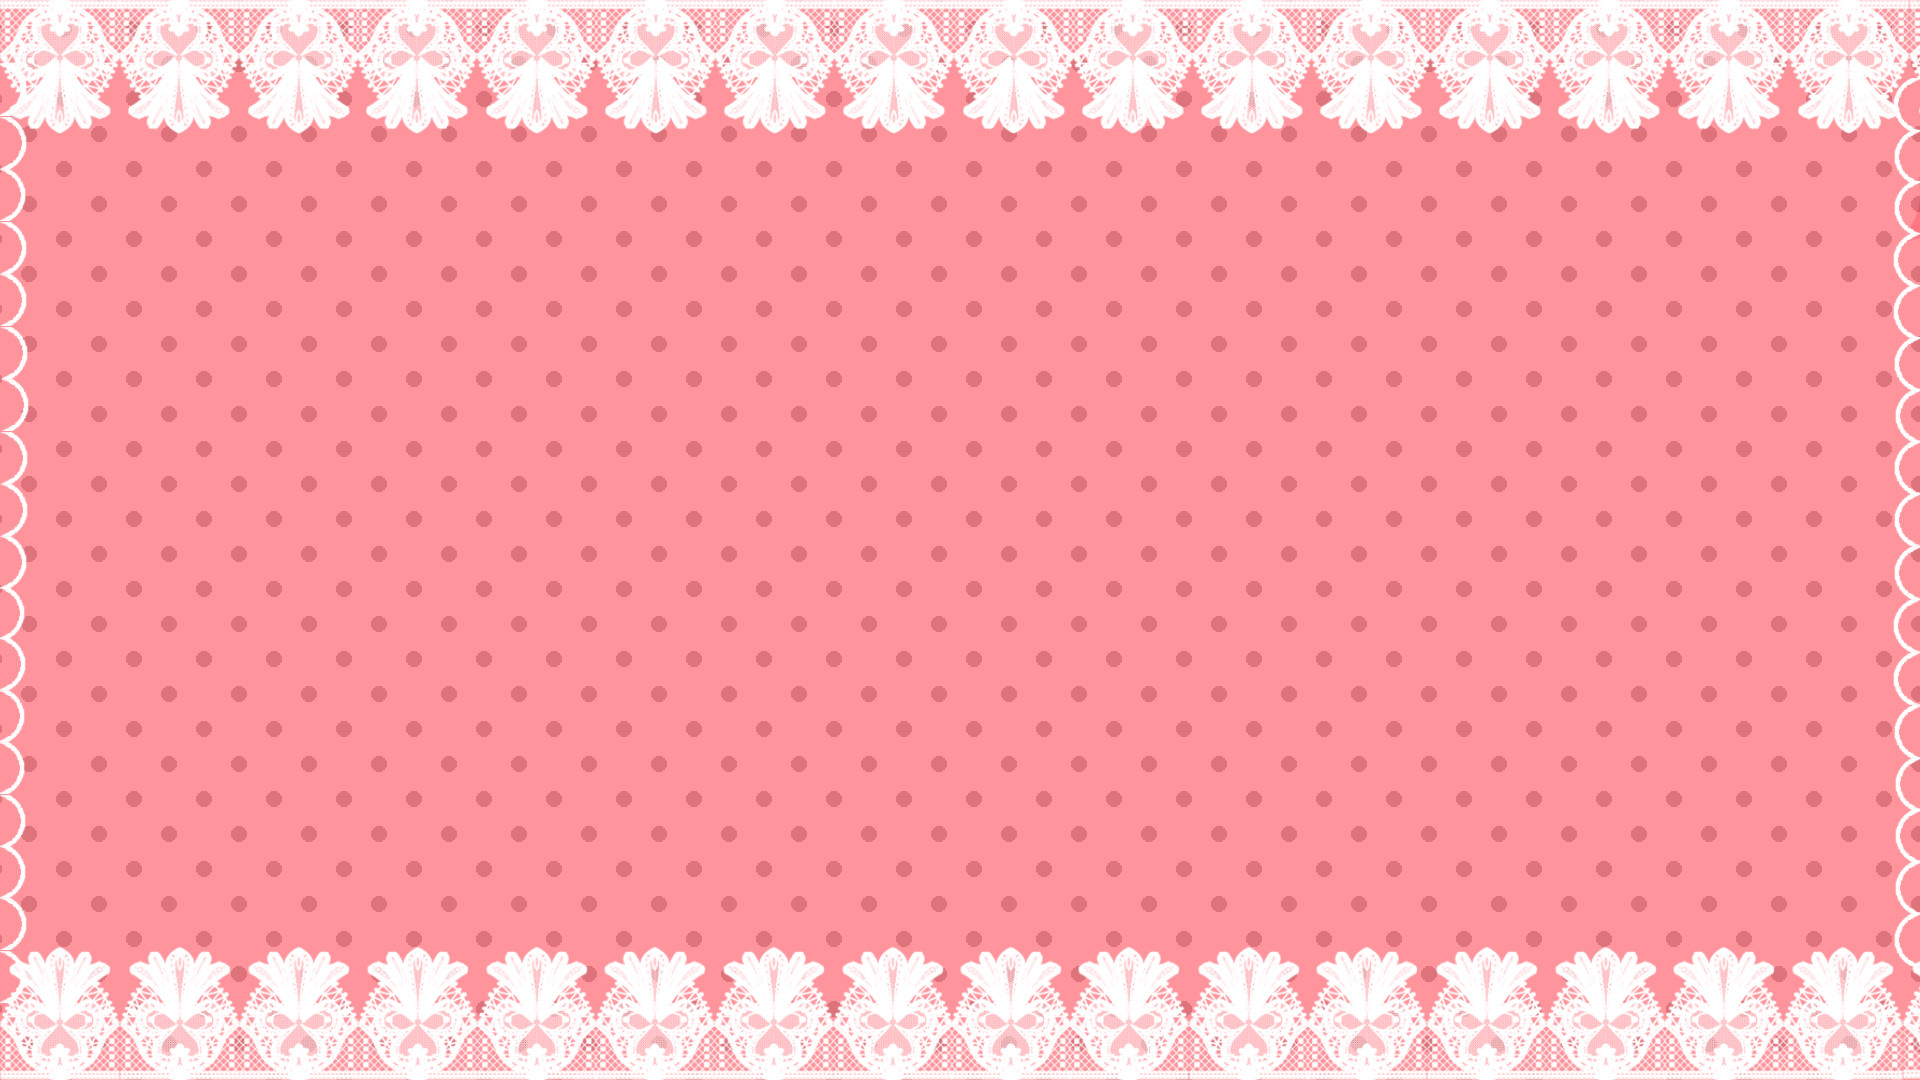 1920x1080 Polka Dot Wallpaper